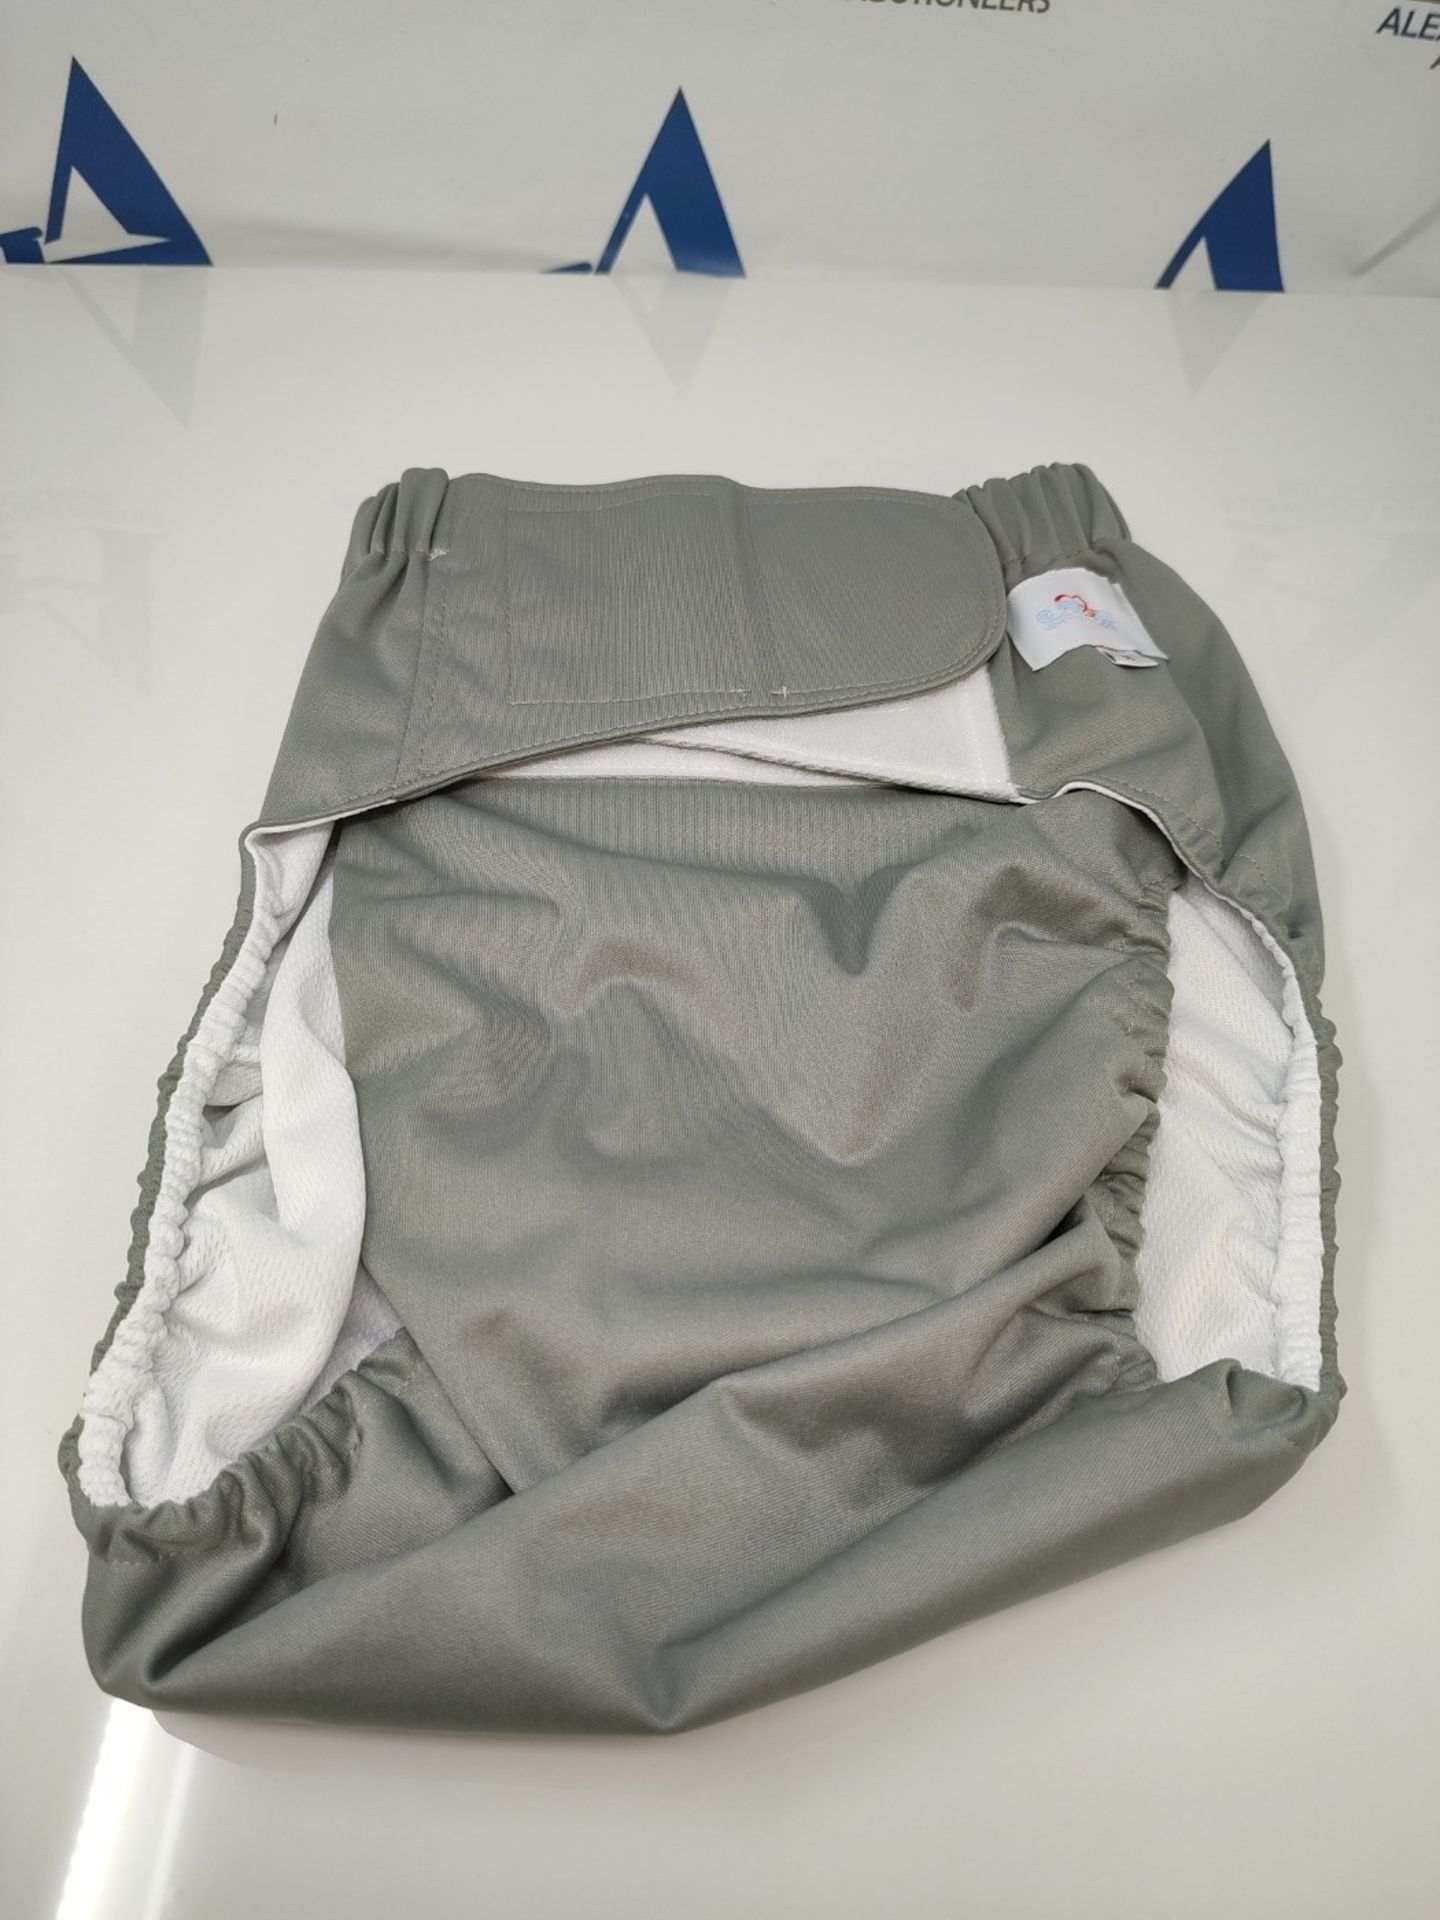 Milisten Reusable Diaper Adult Cloth Diaper Washable Elastic Adjustable Reusable Adult